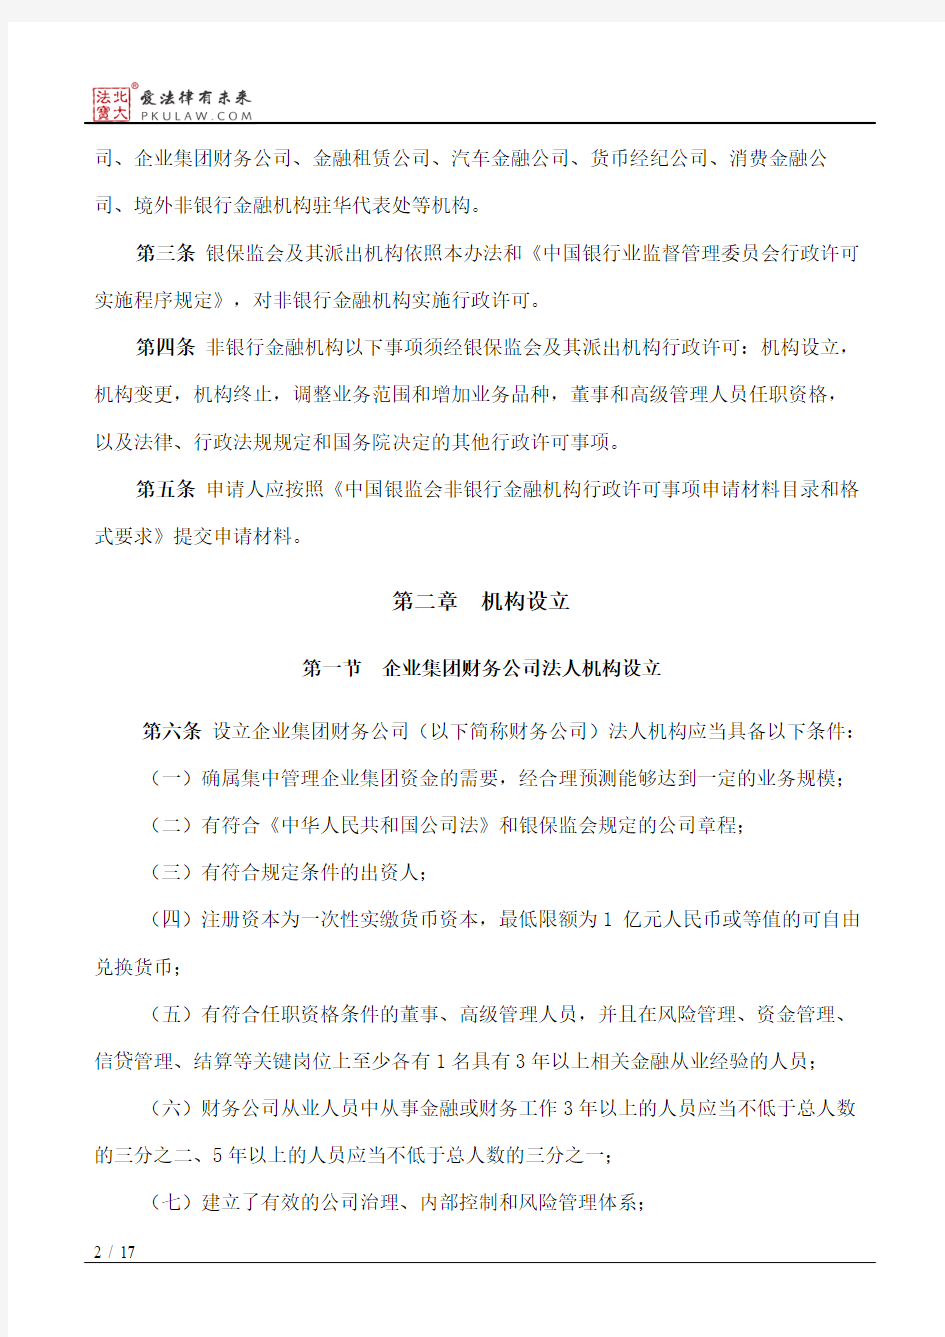 中国银保监会非银行金融机构行政许可事项实施办法(2018修正)